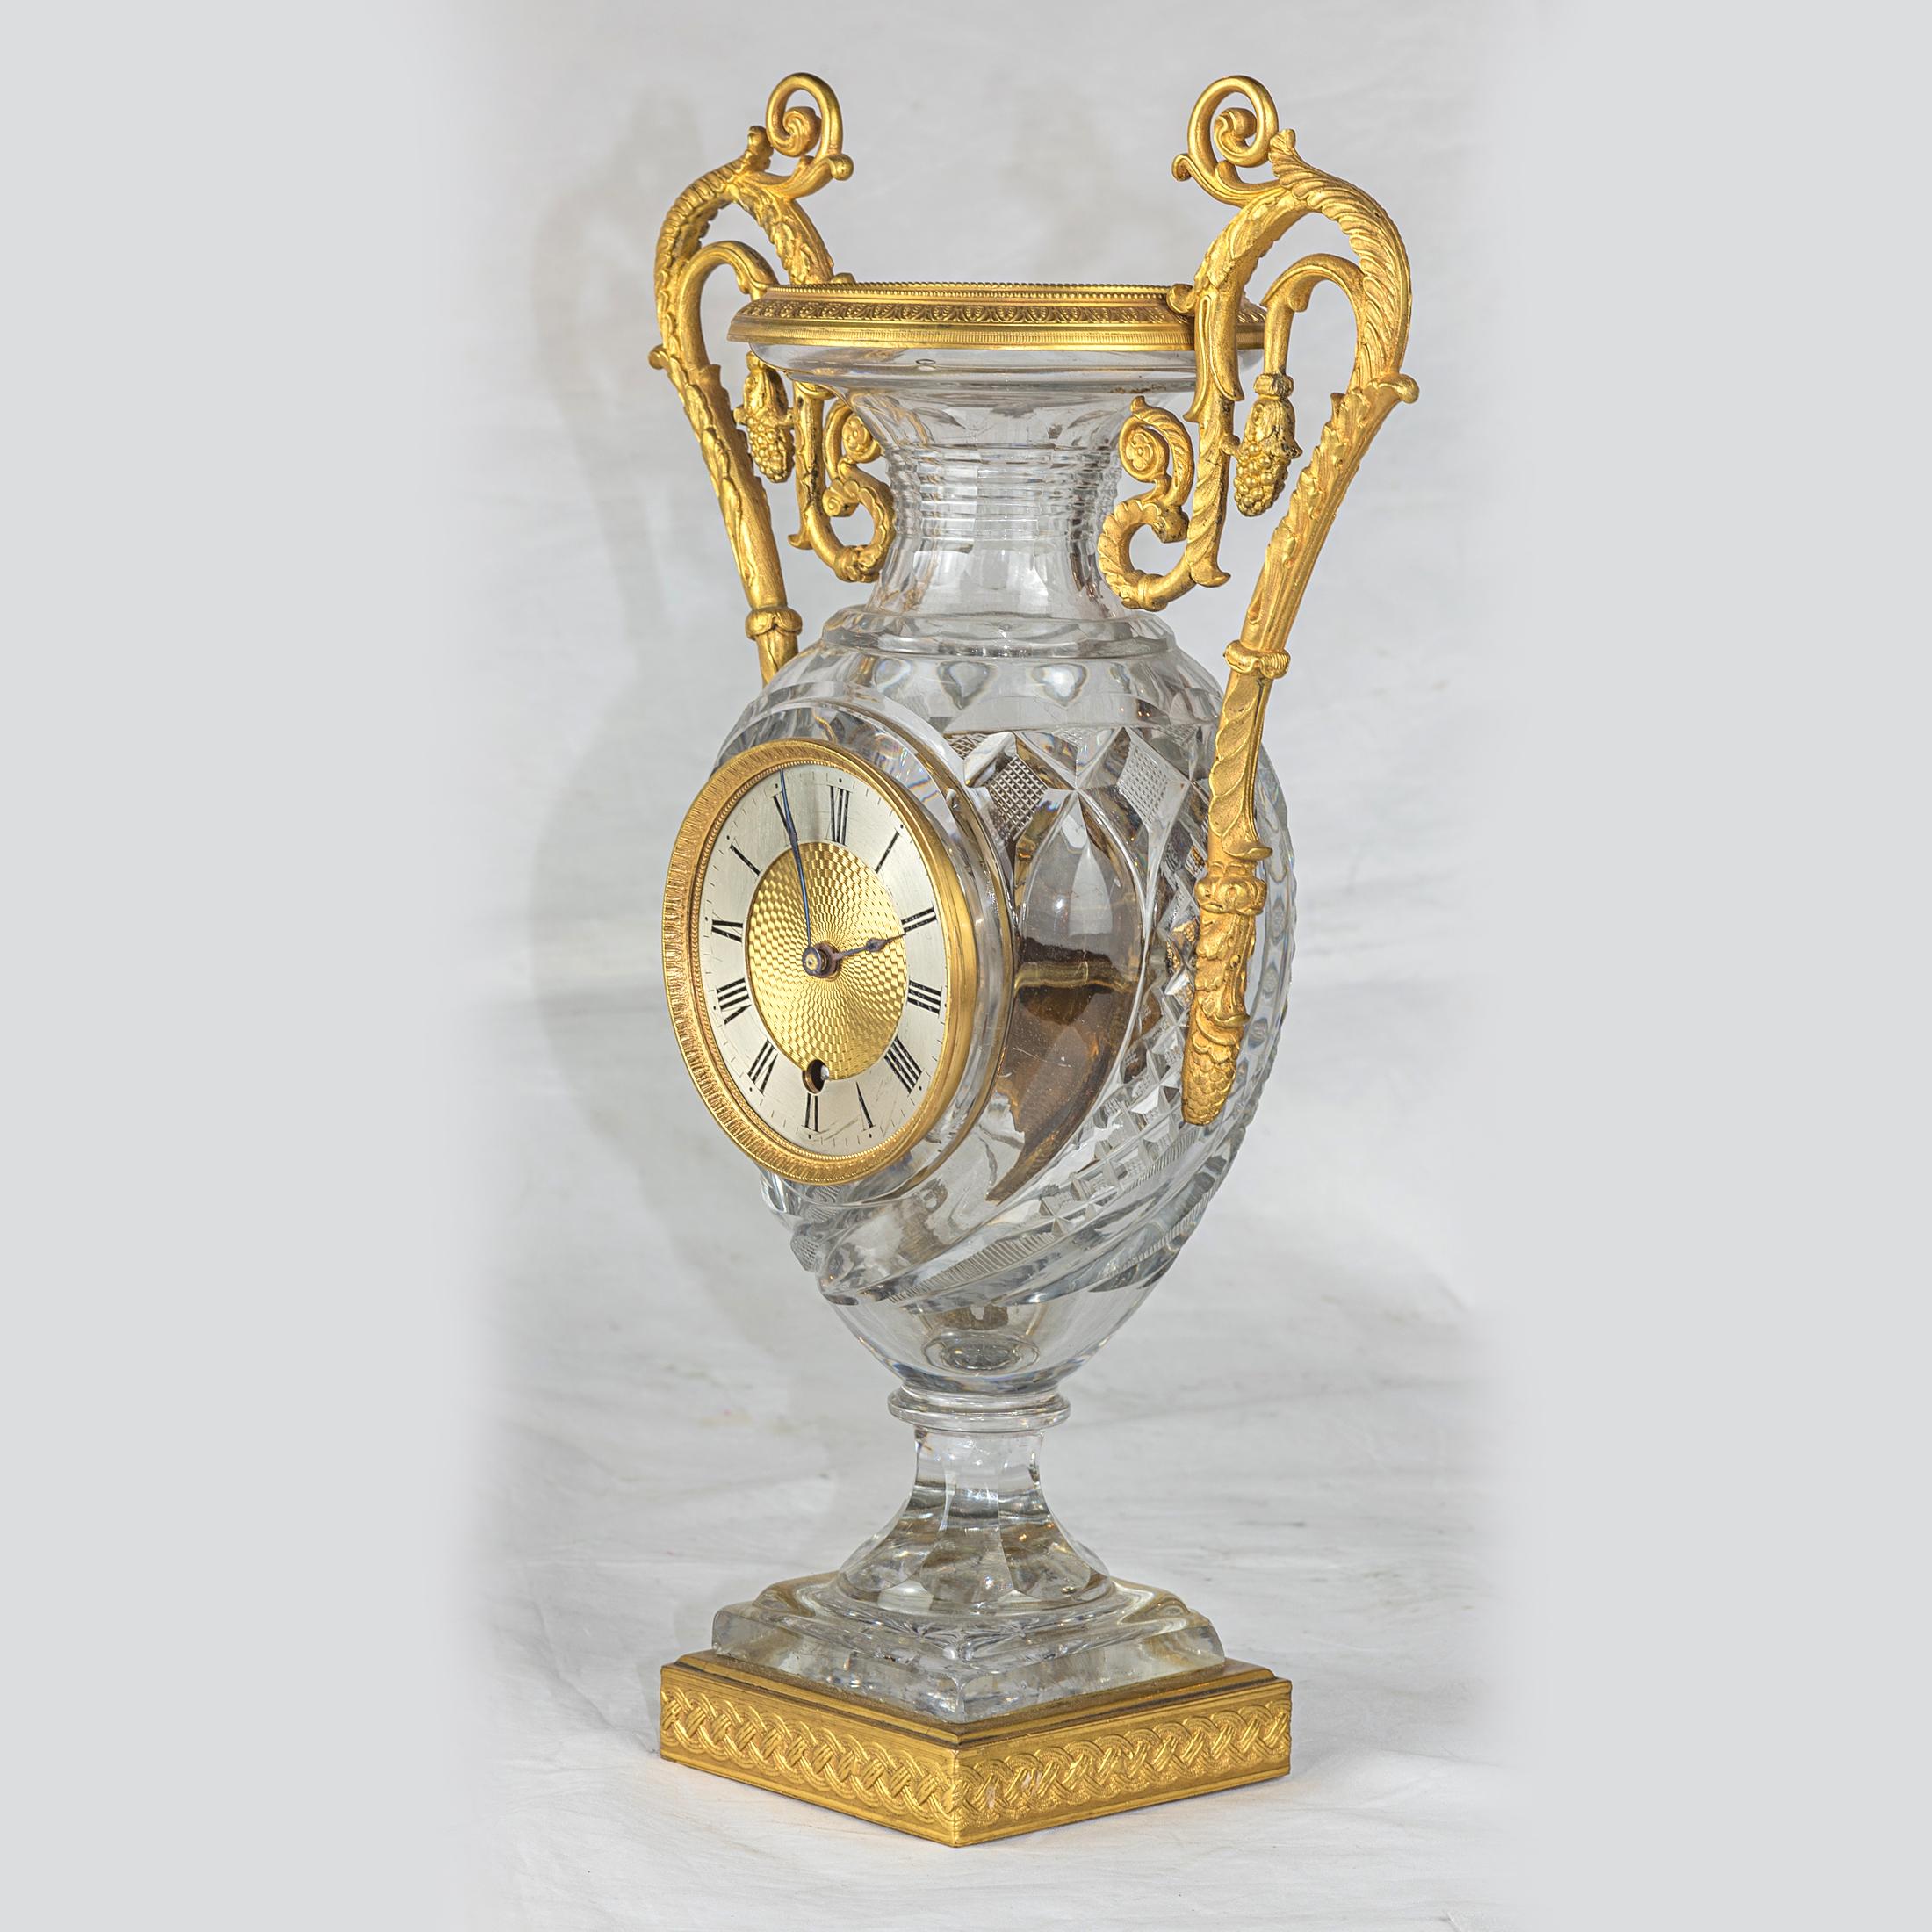 Medici-Uhr aus geschliffenem Kristall in Vasenform, mit Ormolu-Montierung. Zwei vergoldete Griffe mit Blattwerk.

Herkunft: Französisch
Datum: um 1810
Abmessungen: 14 x 8 3/4 x 4 1/4 Zoll